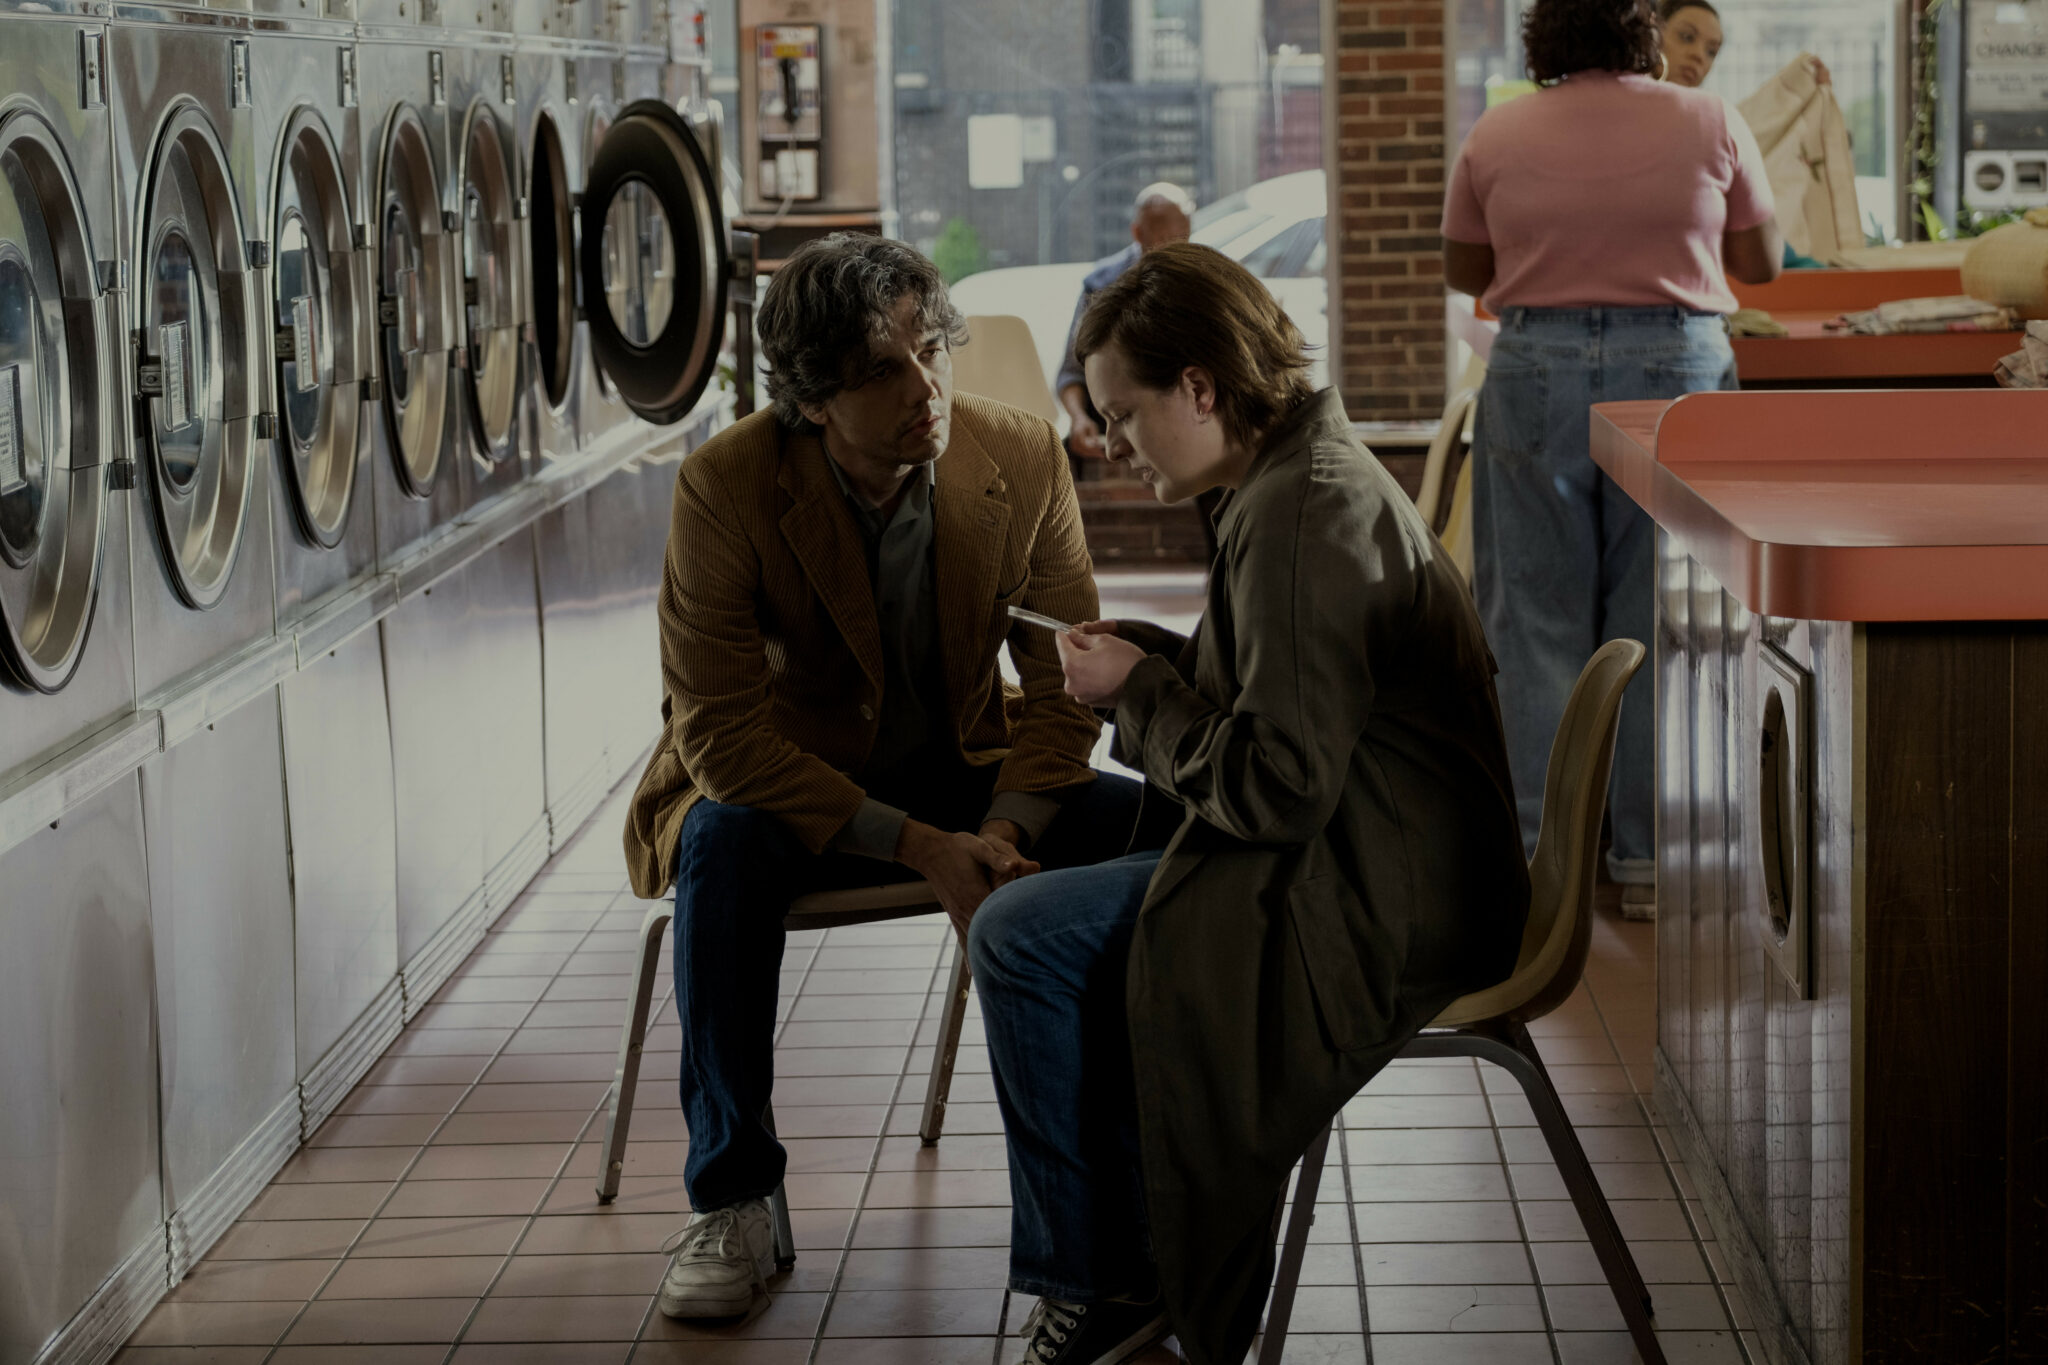 Wagner Moura sitzt neben Elizabeth Moss in einem Waschsalon. Die beiden unterhalten sich während sie einen Notizzettel vor sich hält. Shining Girls